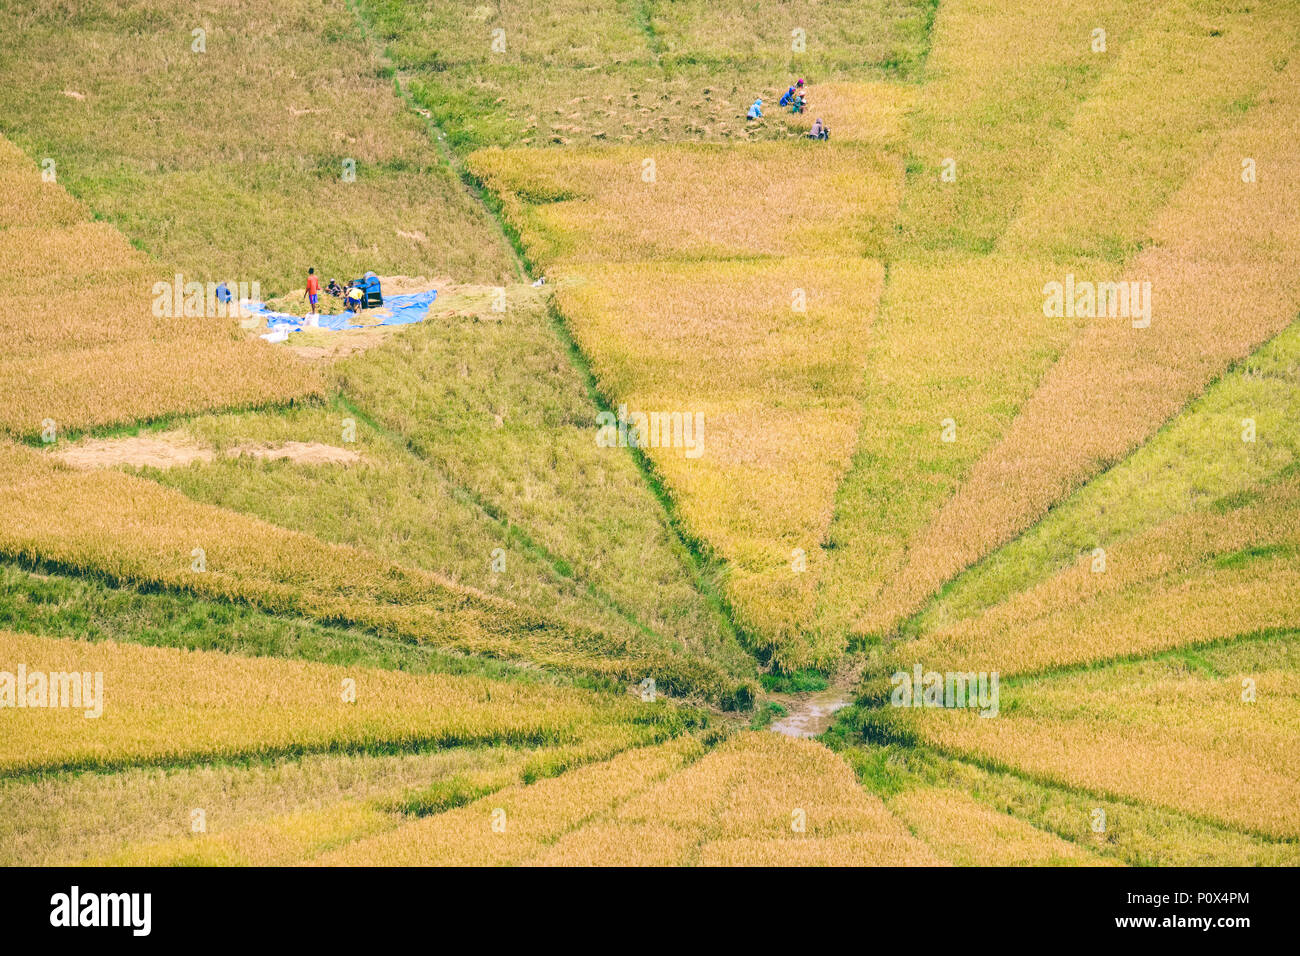 Die Landwirte ernten das Spinnennetz von Reisfeldern in der cancar Dorf, in der Nähe von Ruteng, manggarai Regency, Insel Flores, Indonesien. Stockfoto